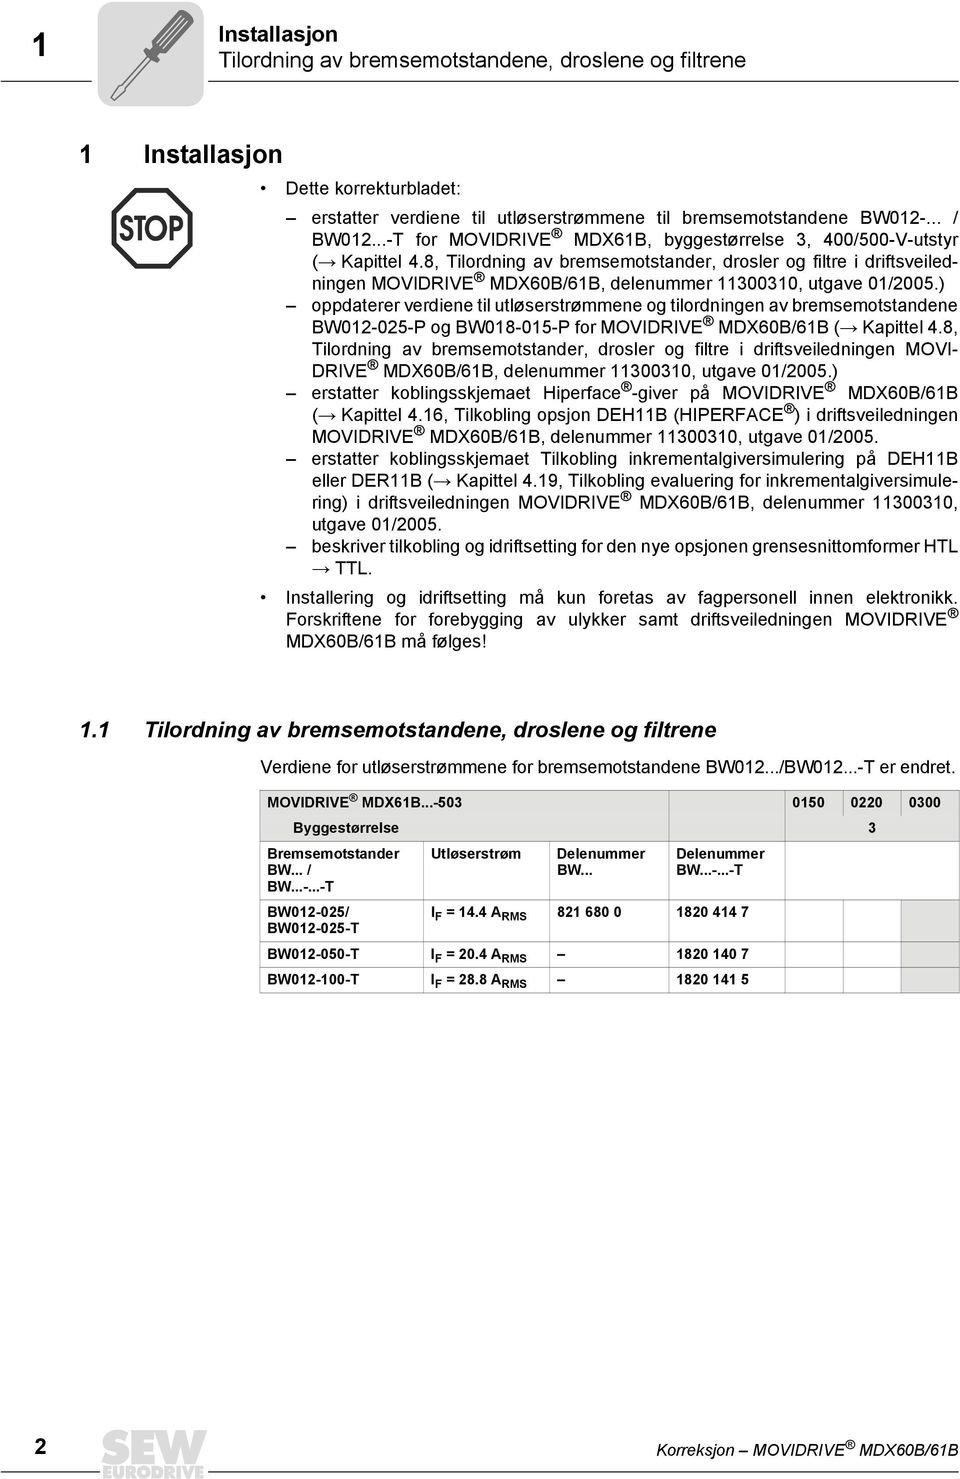 8, Tilordning av bremsemotstander, drosler og filtre i driftsveiledningen MOVIDRIVE MDX60B/6B, delenummer 30030, utgave 0/2005.